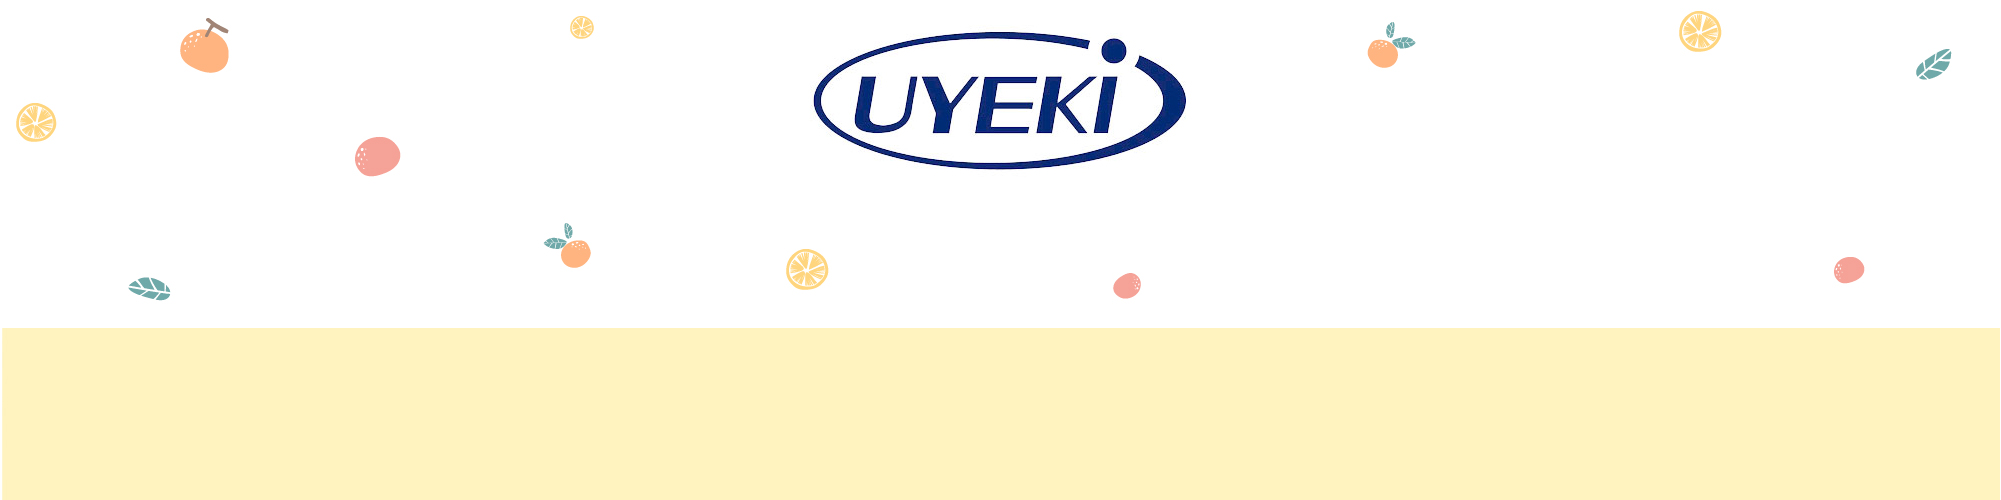 Uyeki-banner-background